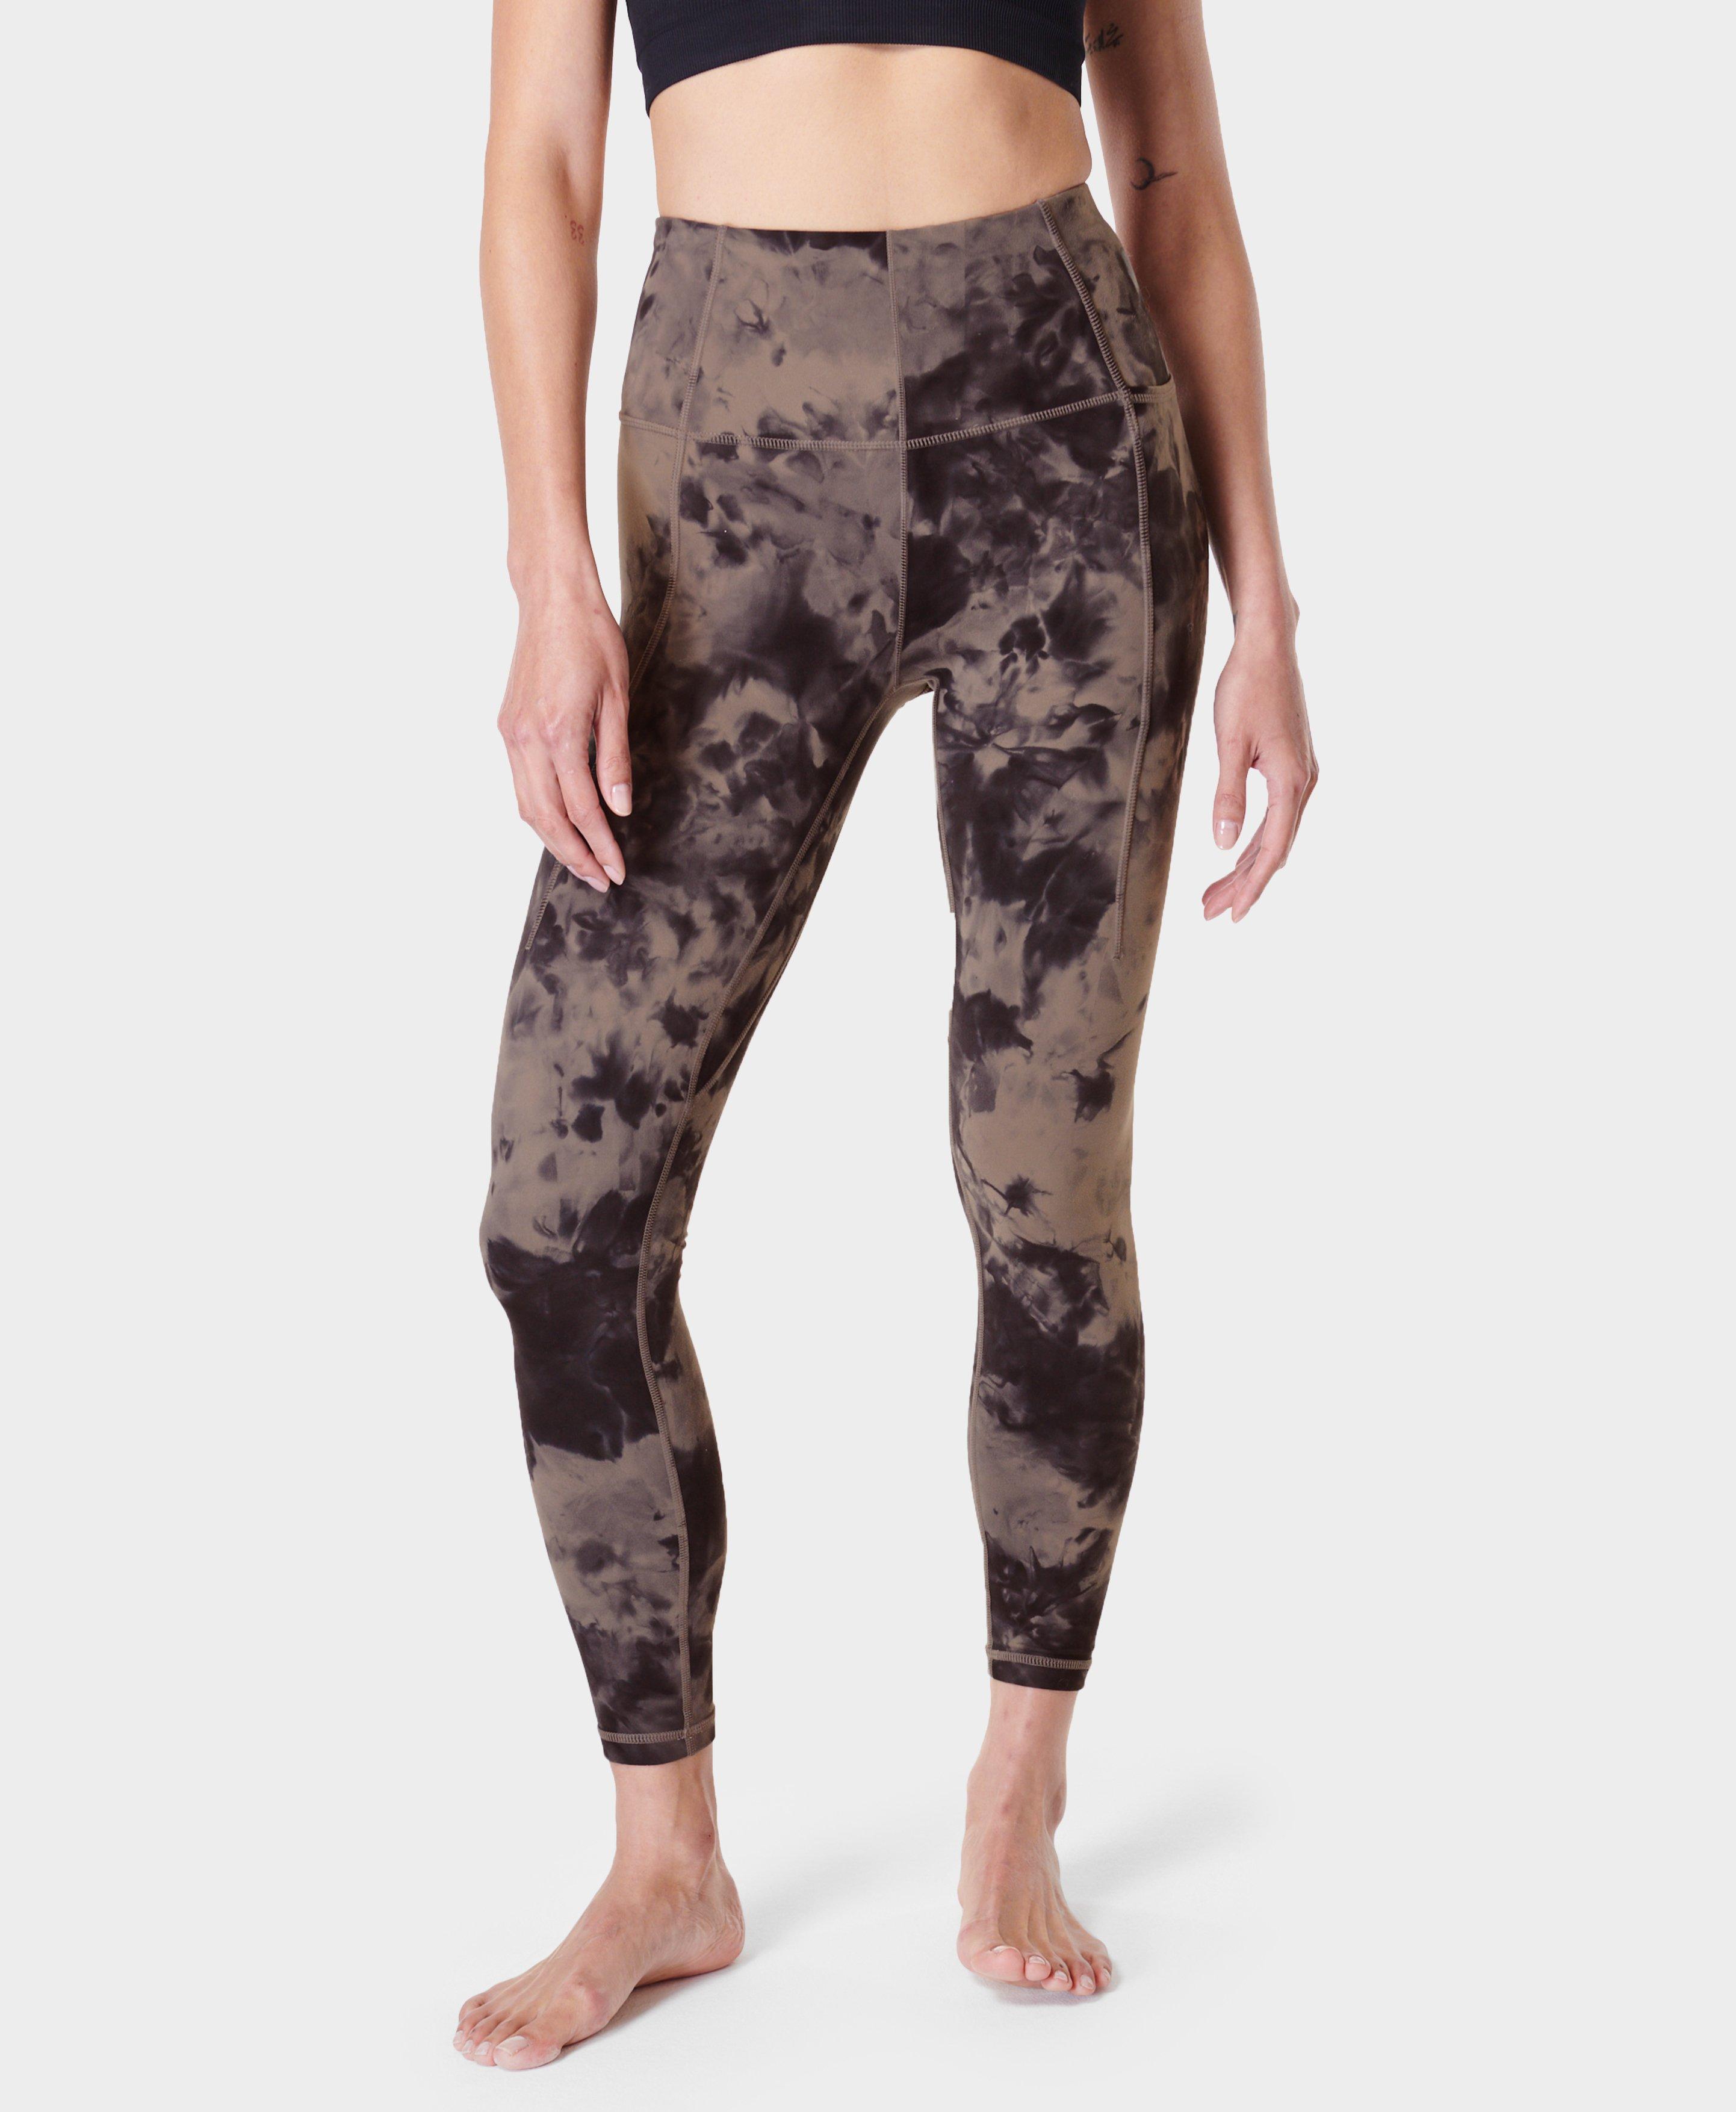 Super Soft 7/8 Yoga Leggings - Mocha Brown Spray Dye, Women's Leggings